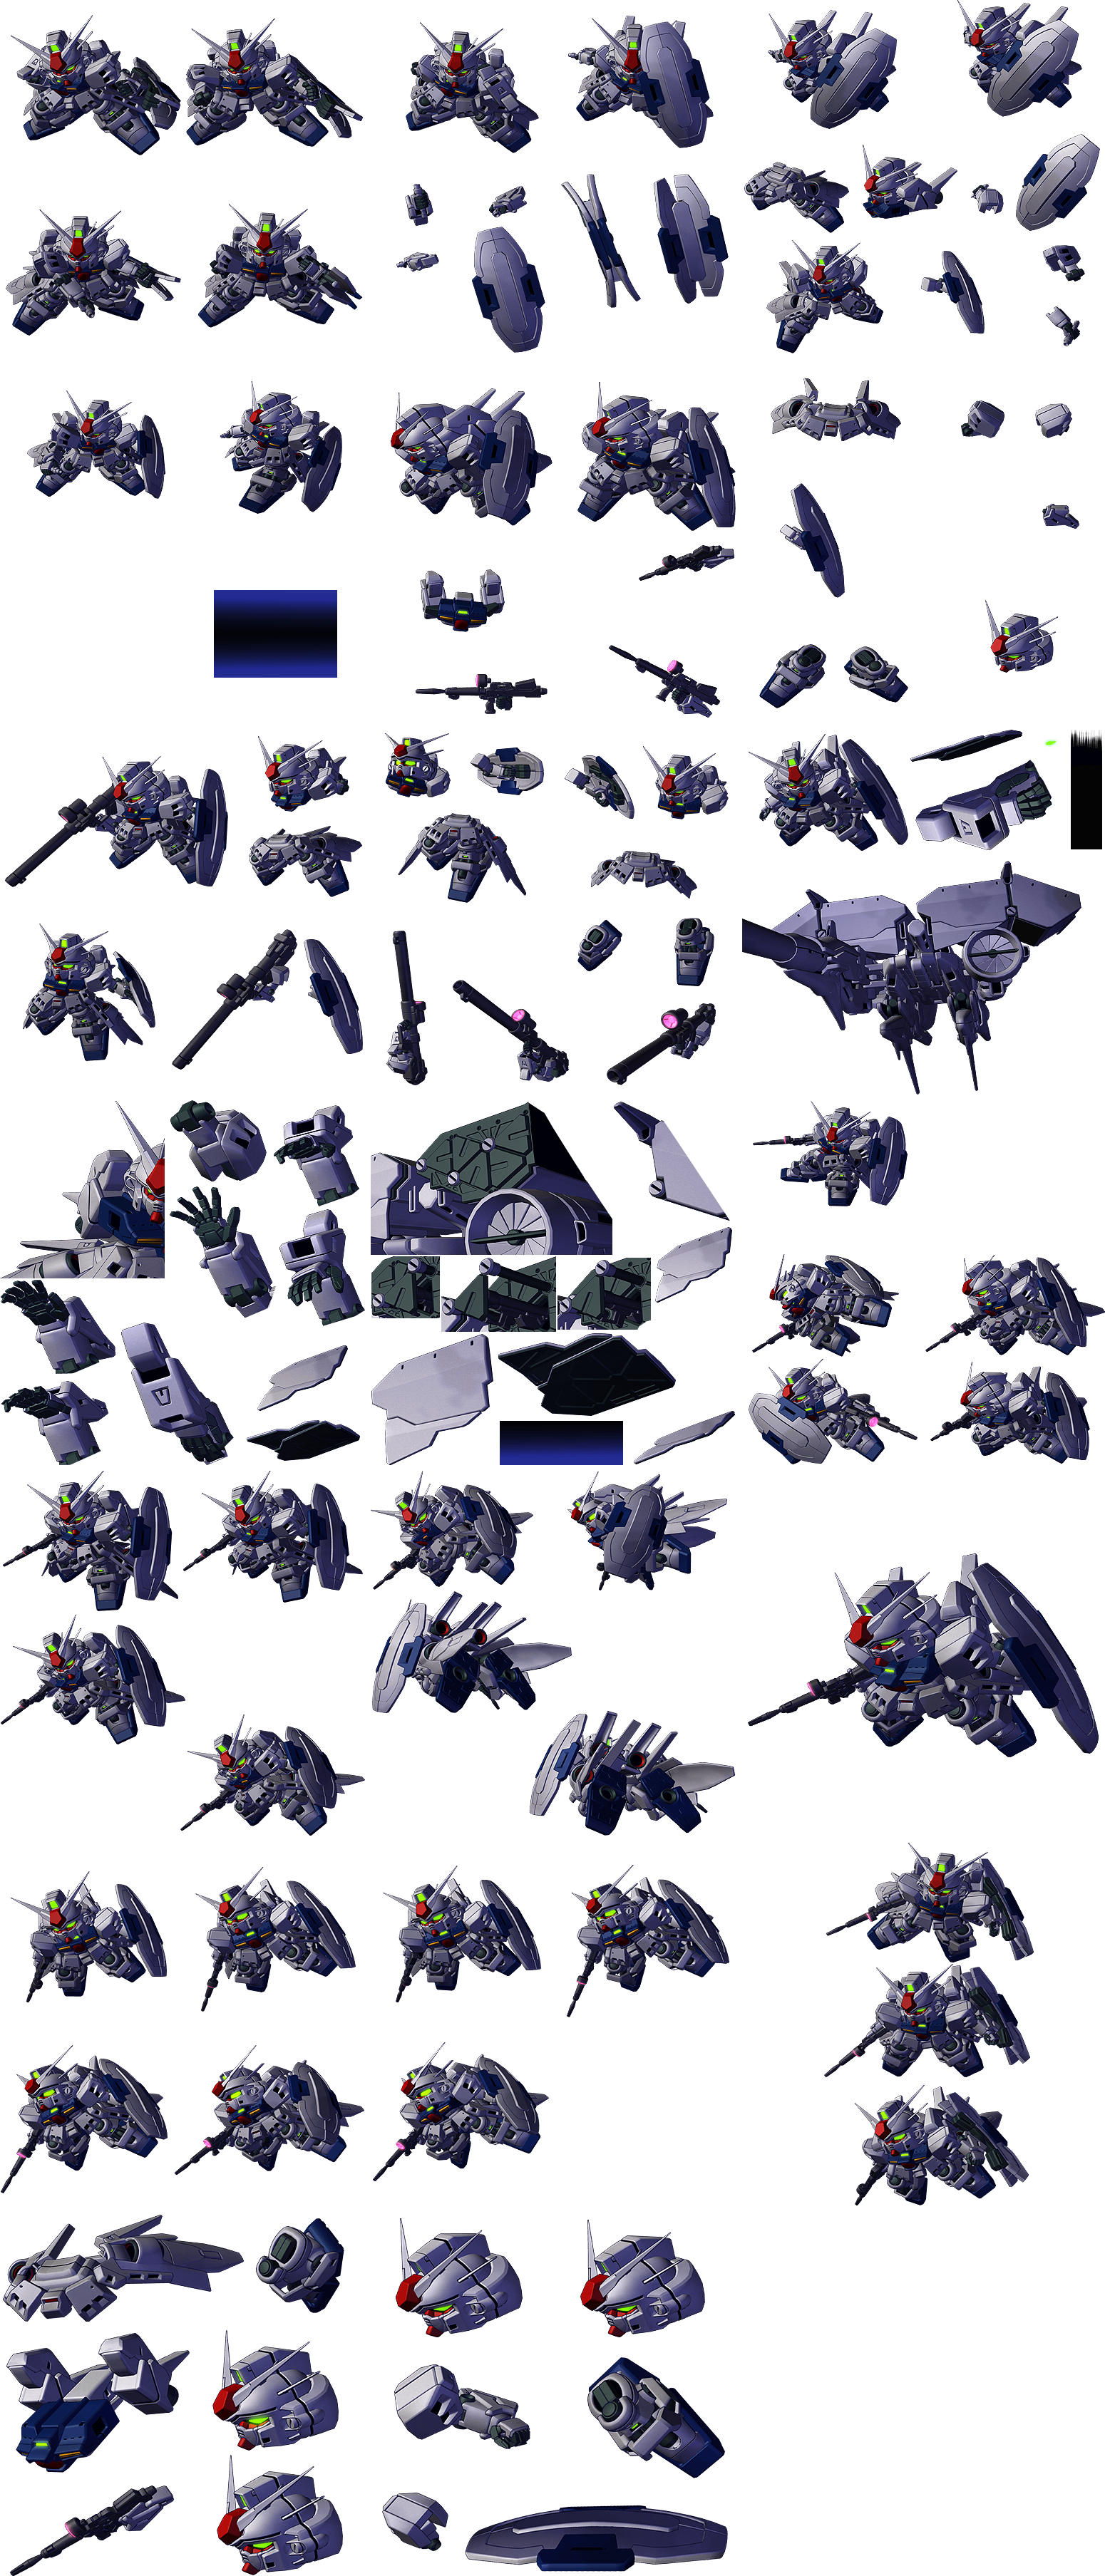 Gundam Unit 3 Dendrobium Stamen